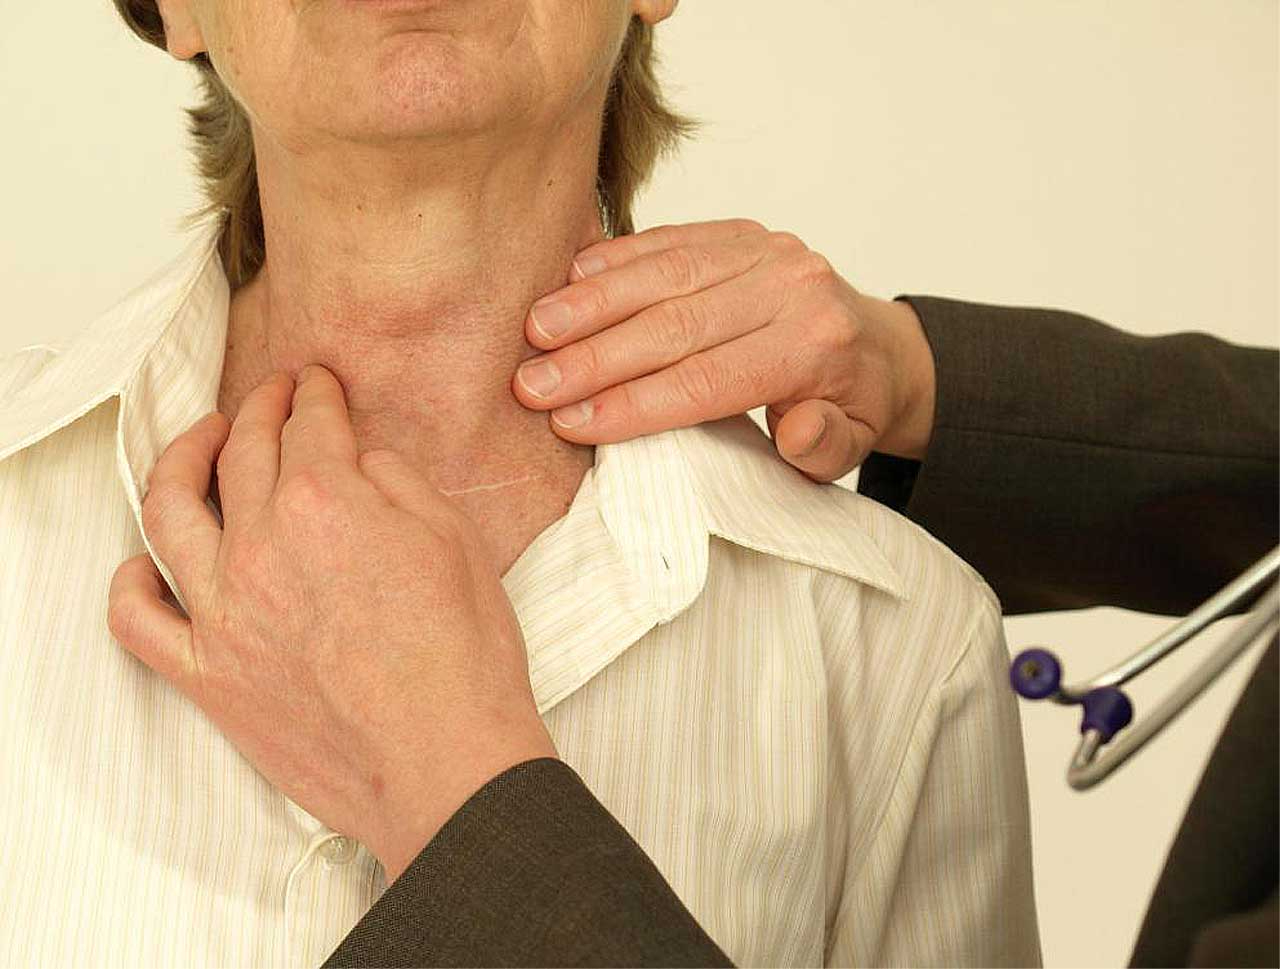 Зоб ахан. Заболевания щитовидной железы. РПК зитовидной железы симпомы. Симптомы.рааащитовидной желрзы. Опухоль щитовиднойсжелезы.